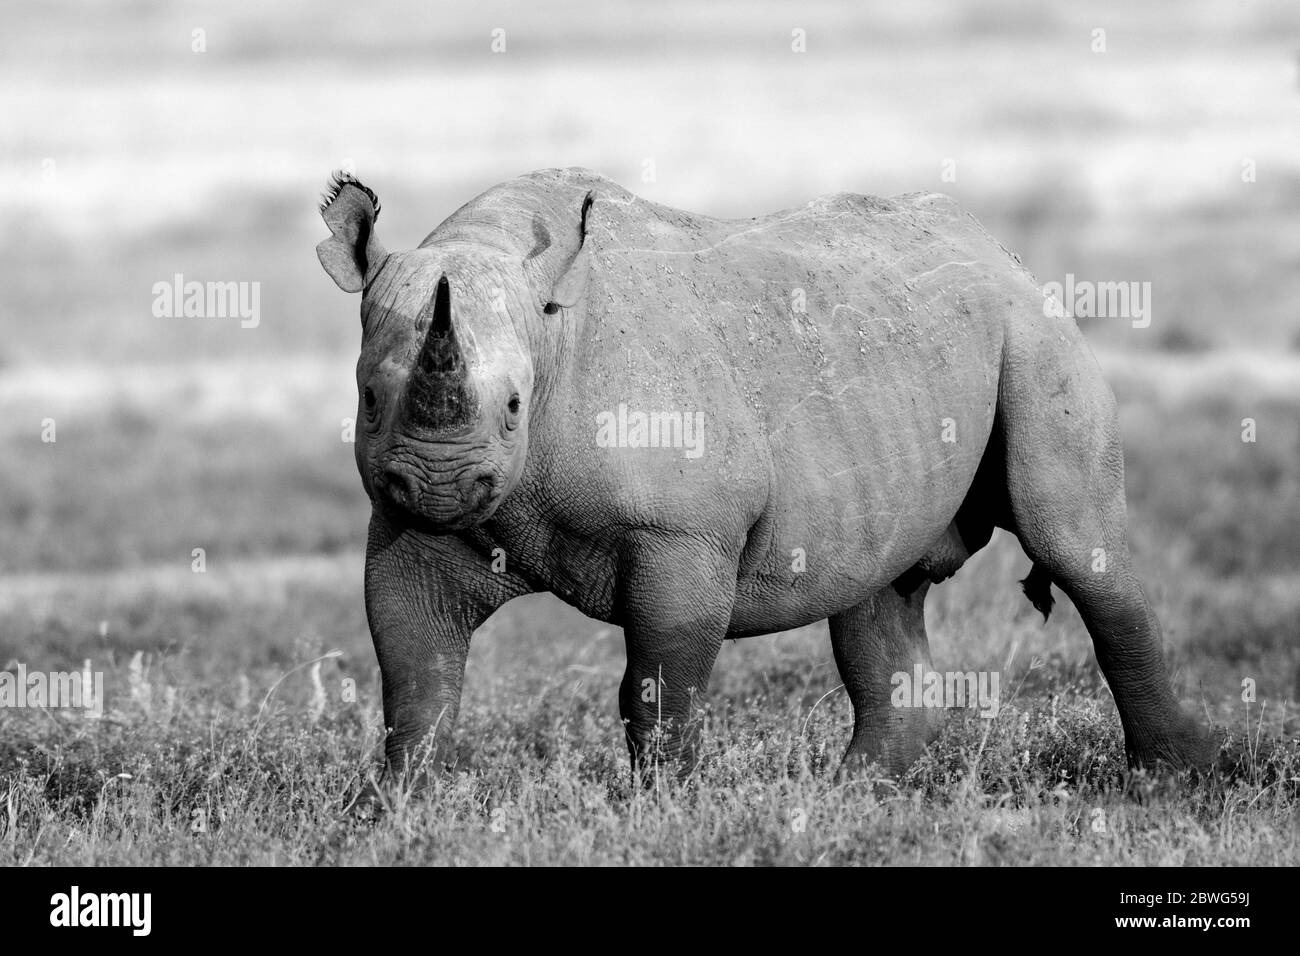 Rhinocéros noirs ou rhinocéros à lèvres accrochantées (Diceros bicornis), zone de conservation de Ngorongoro, Tanzanie, Afrique Banque D'Images